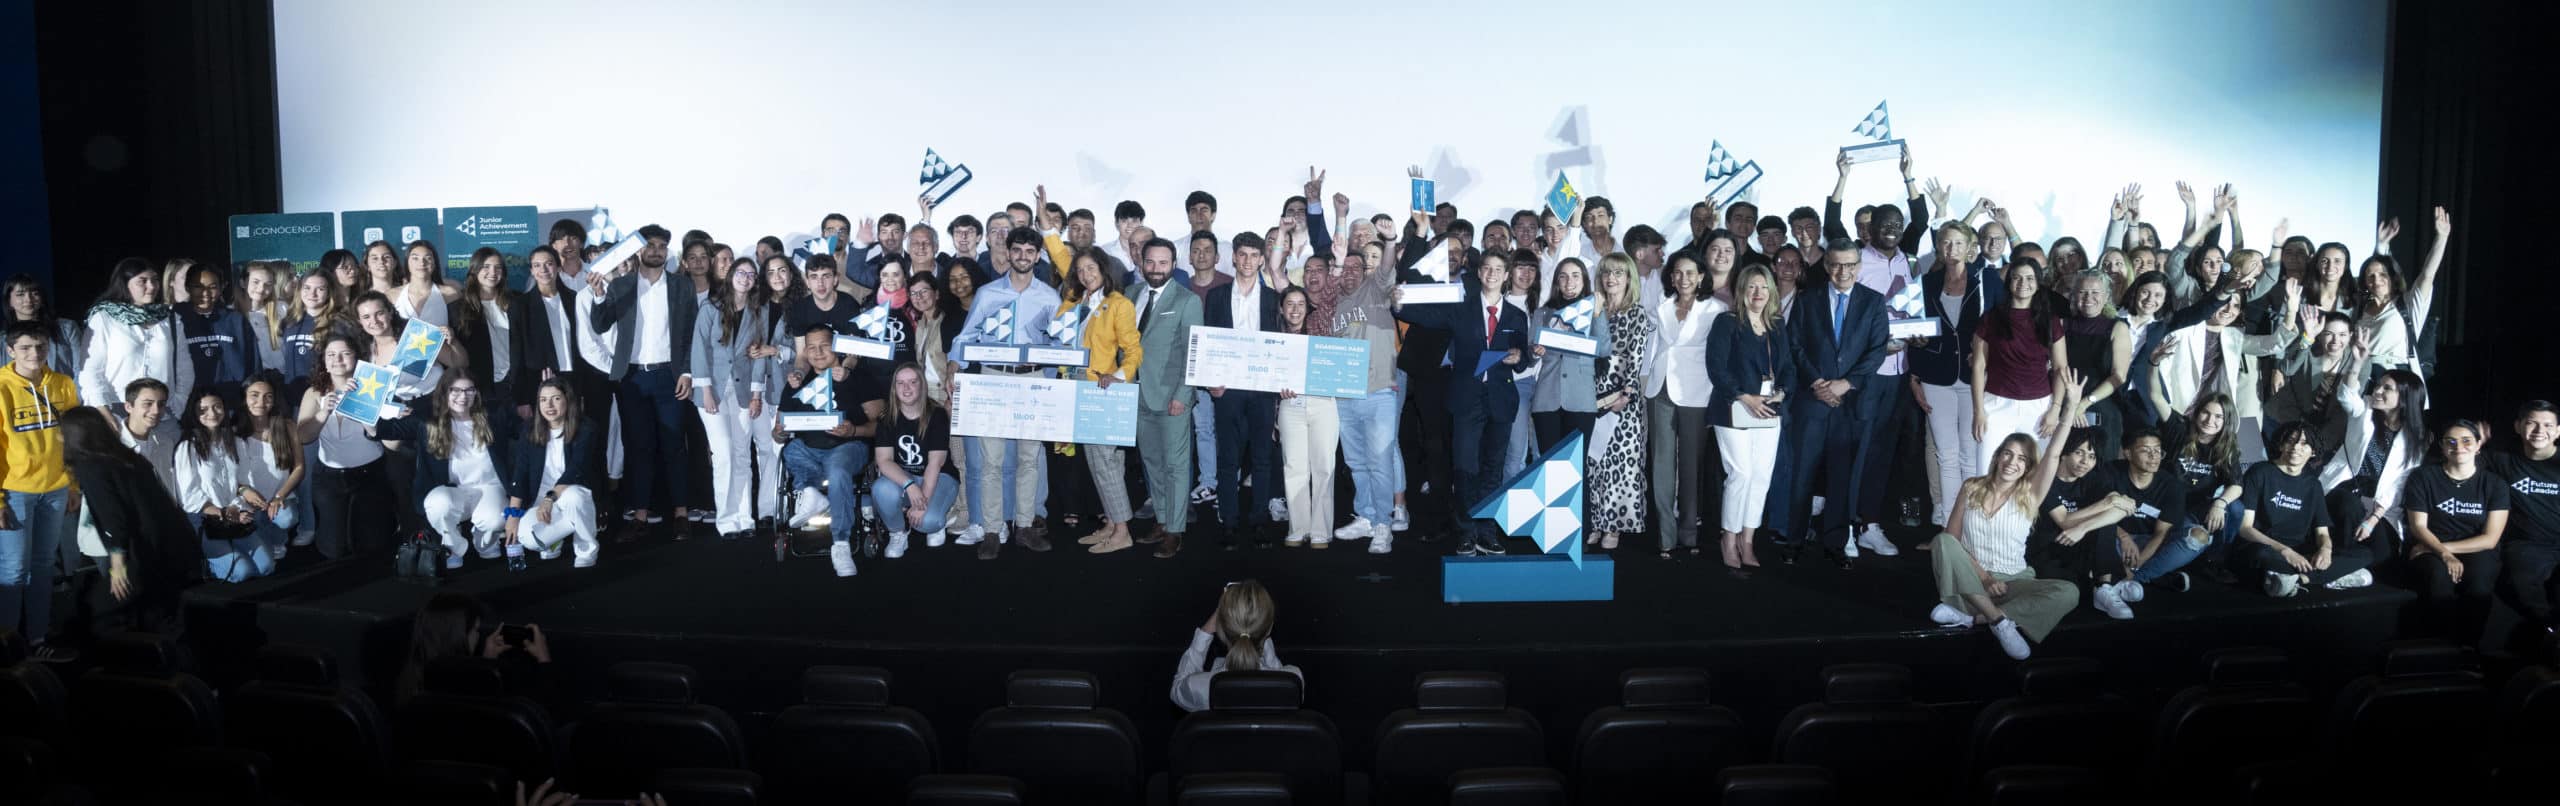 Send by Bus y Solaris Vita, ganadores de la Competición Nacional de Emprendimiento, representarán a España en la Competición europea Gen-E